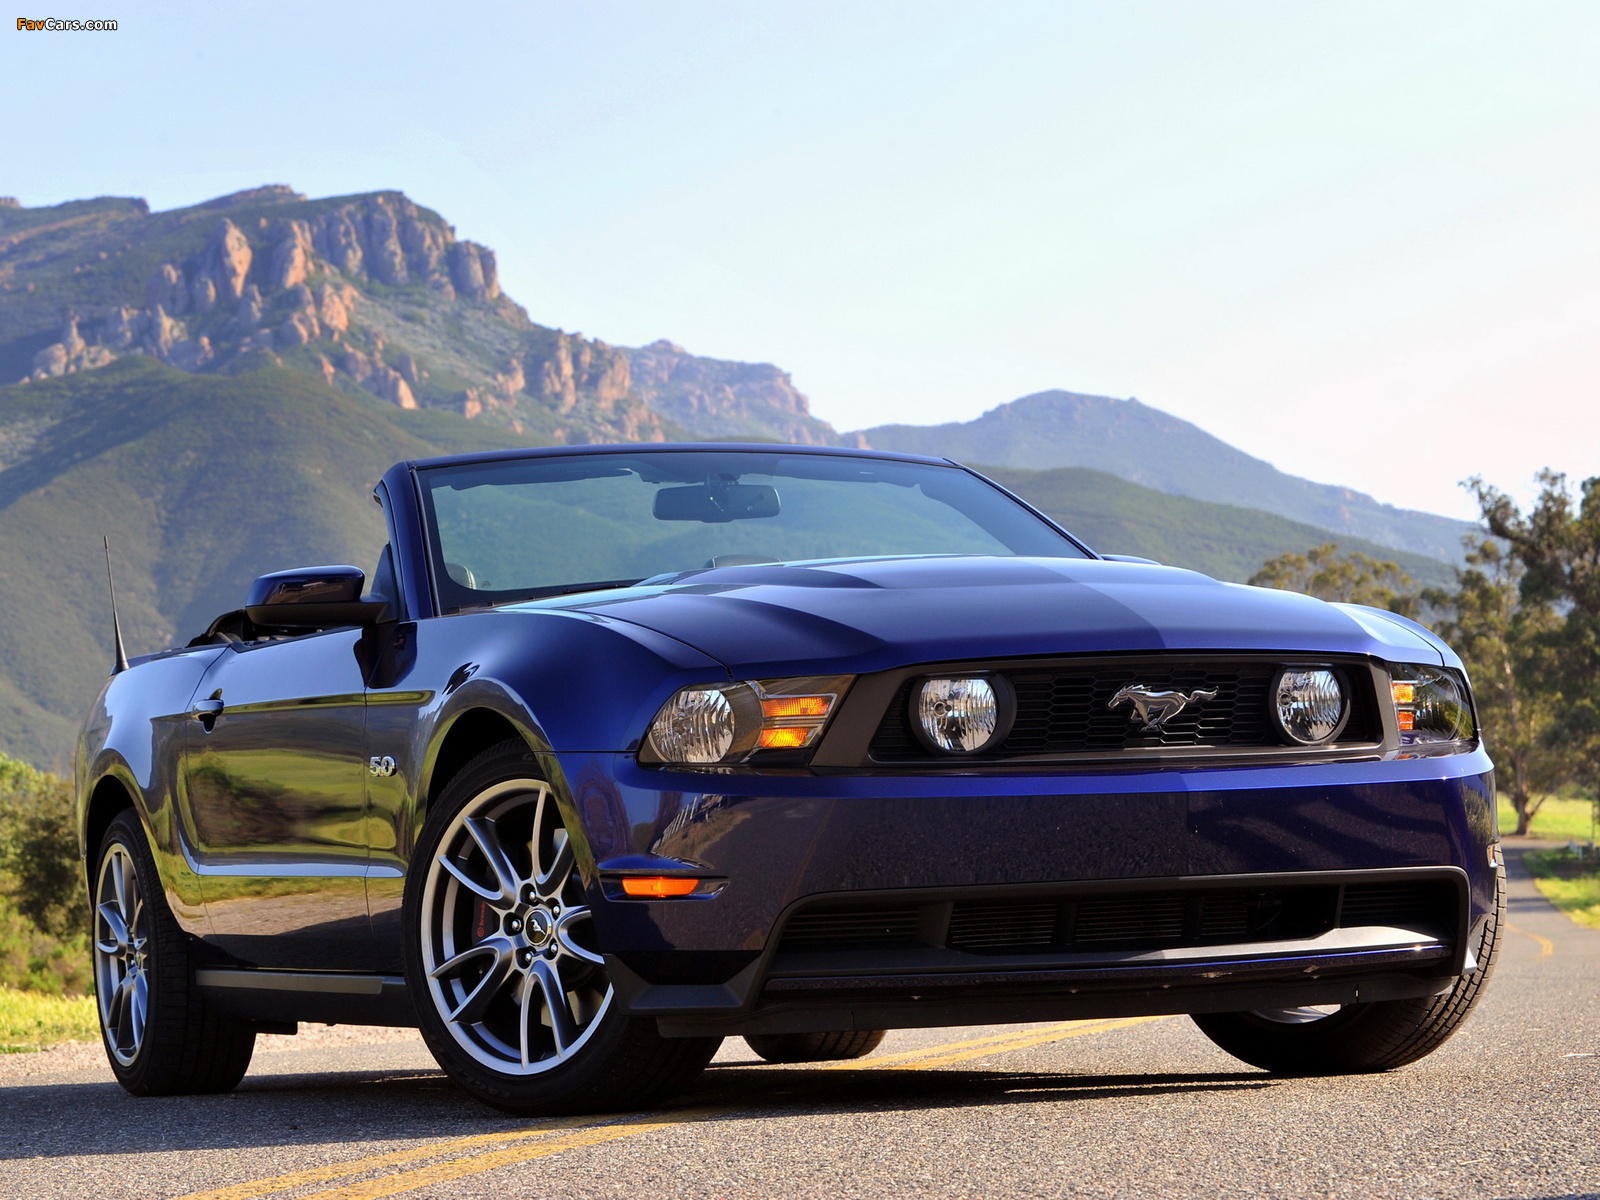 Каталог запчастей Ford Mustang - avto.pro